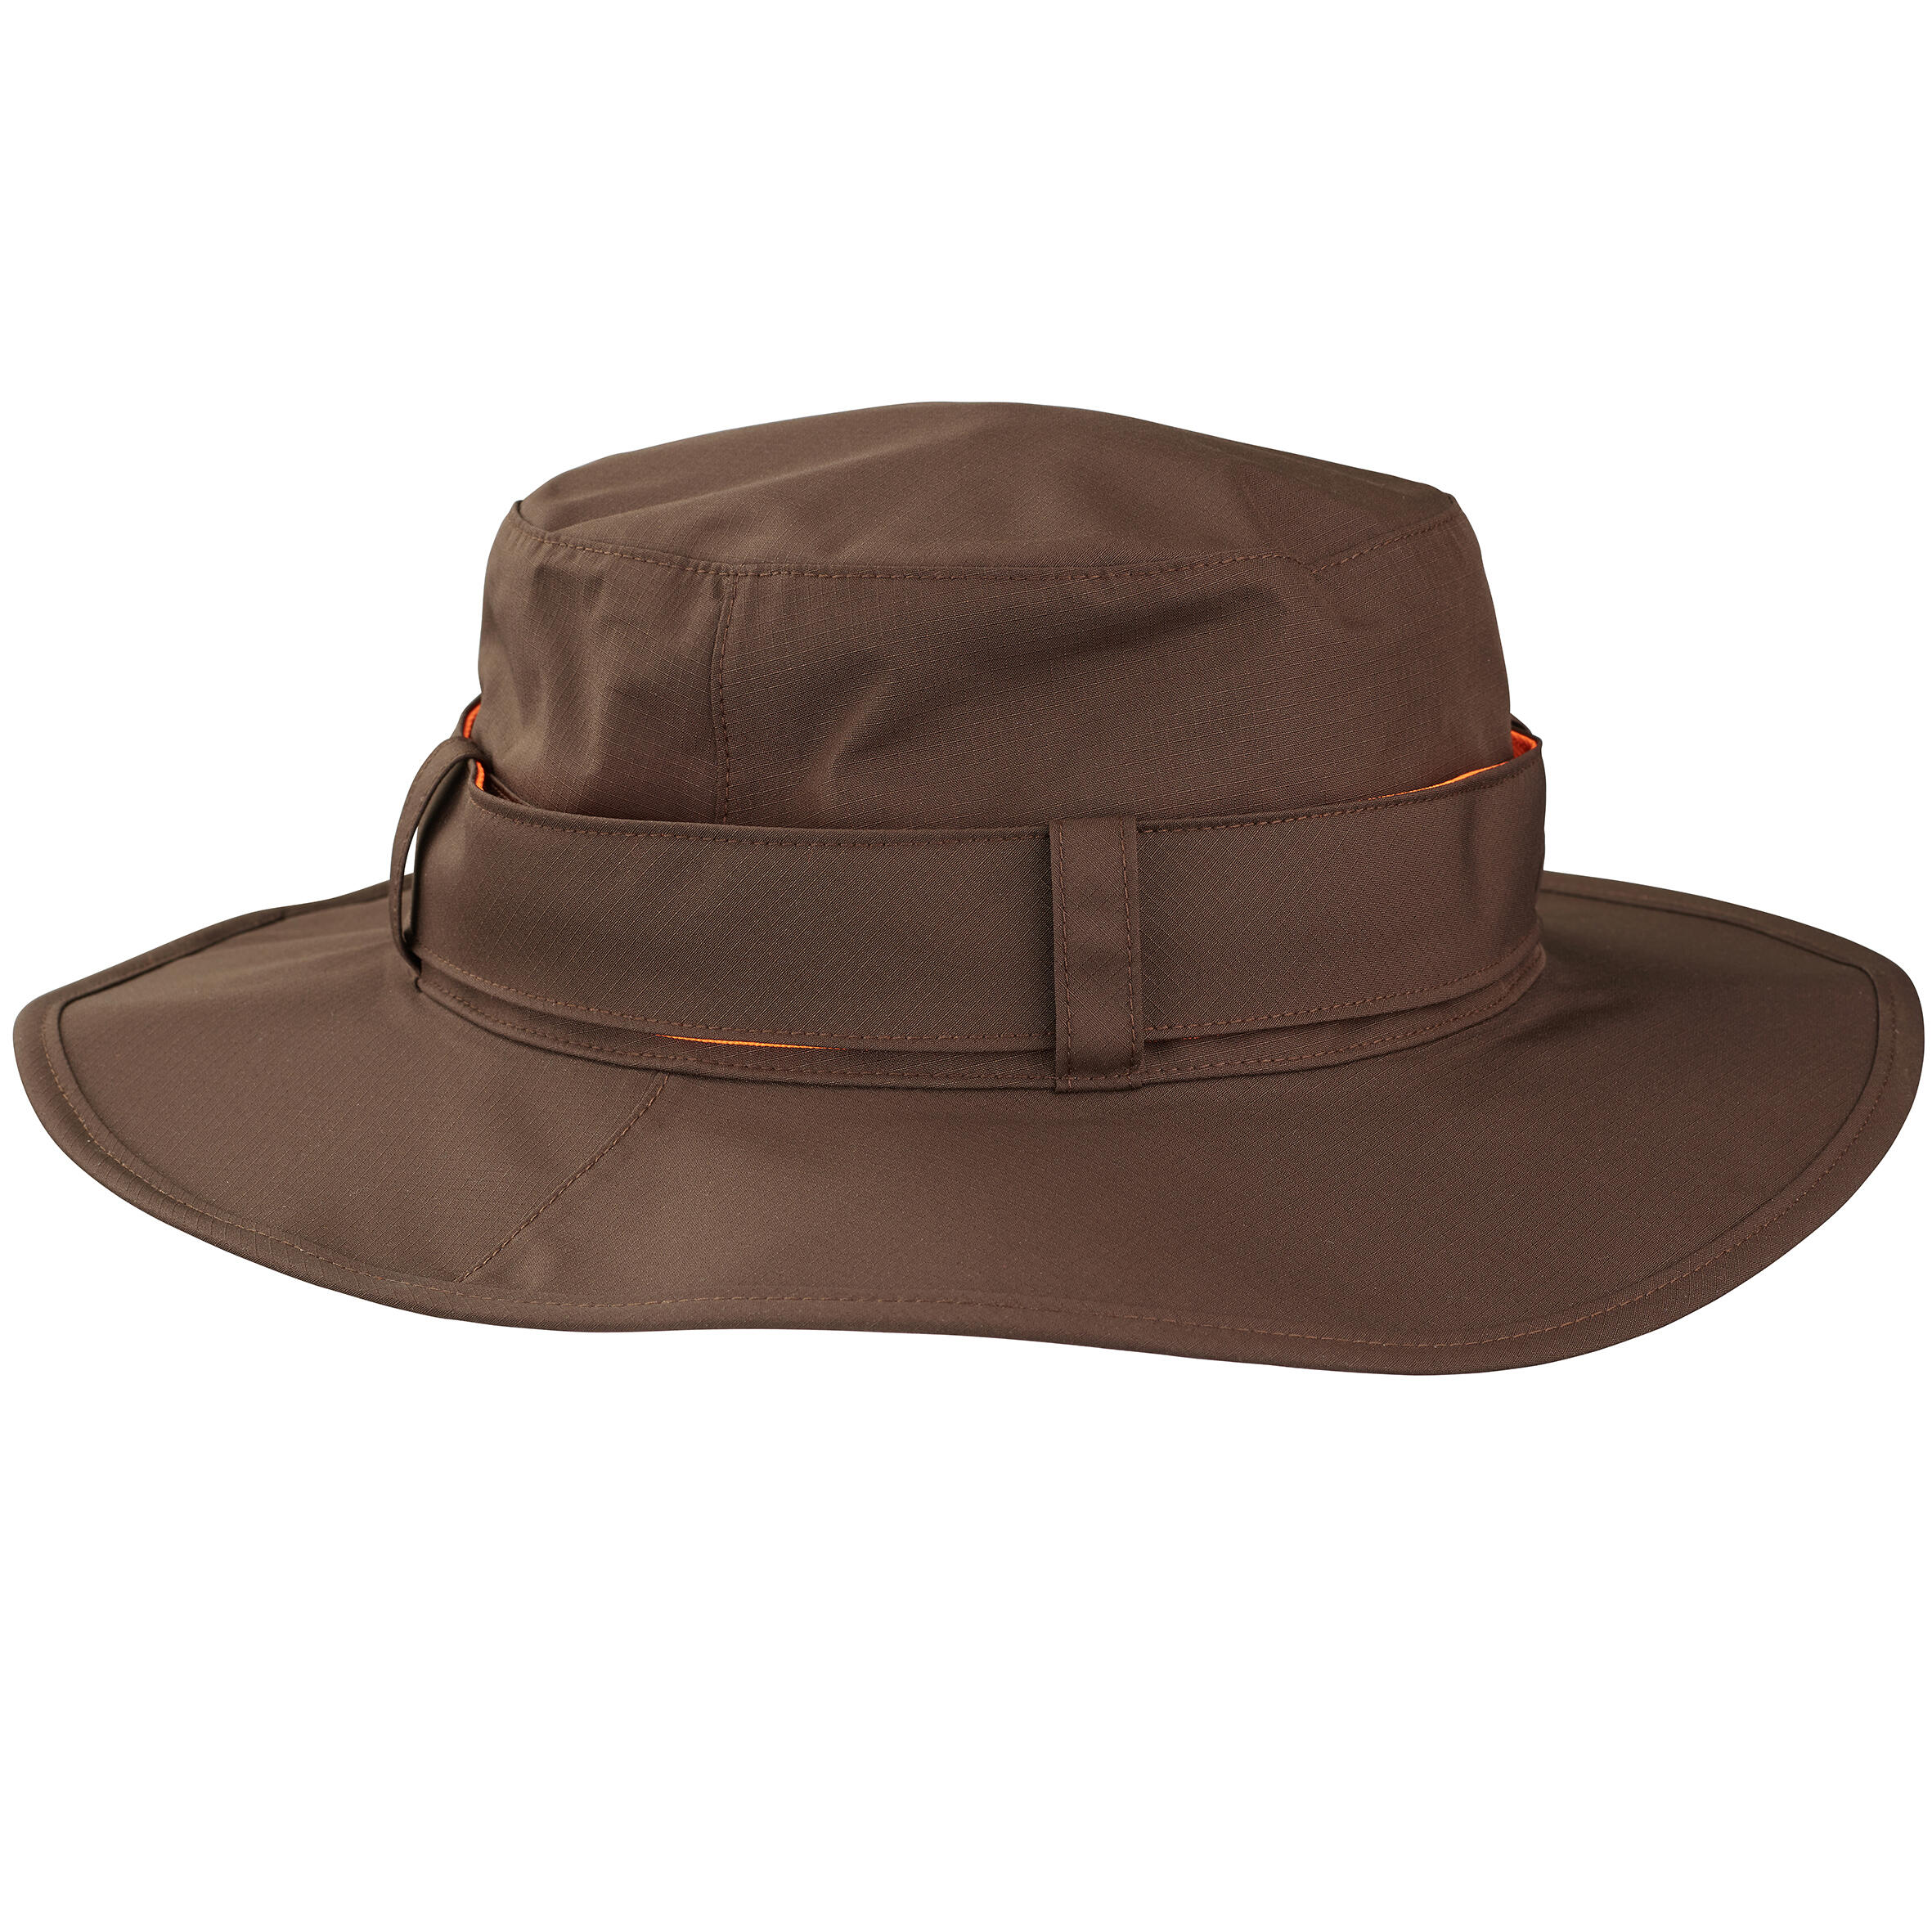 Pălărie 520 impermeabilă și rezistentă Bărbați decathlon.ro